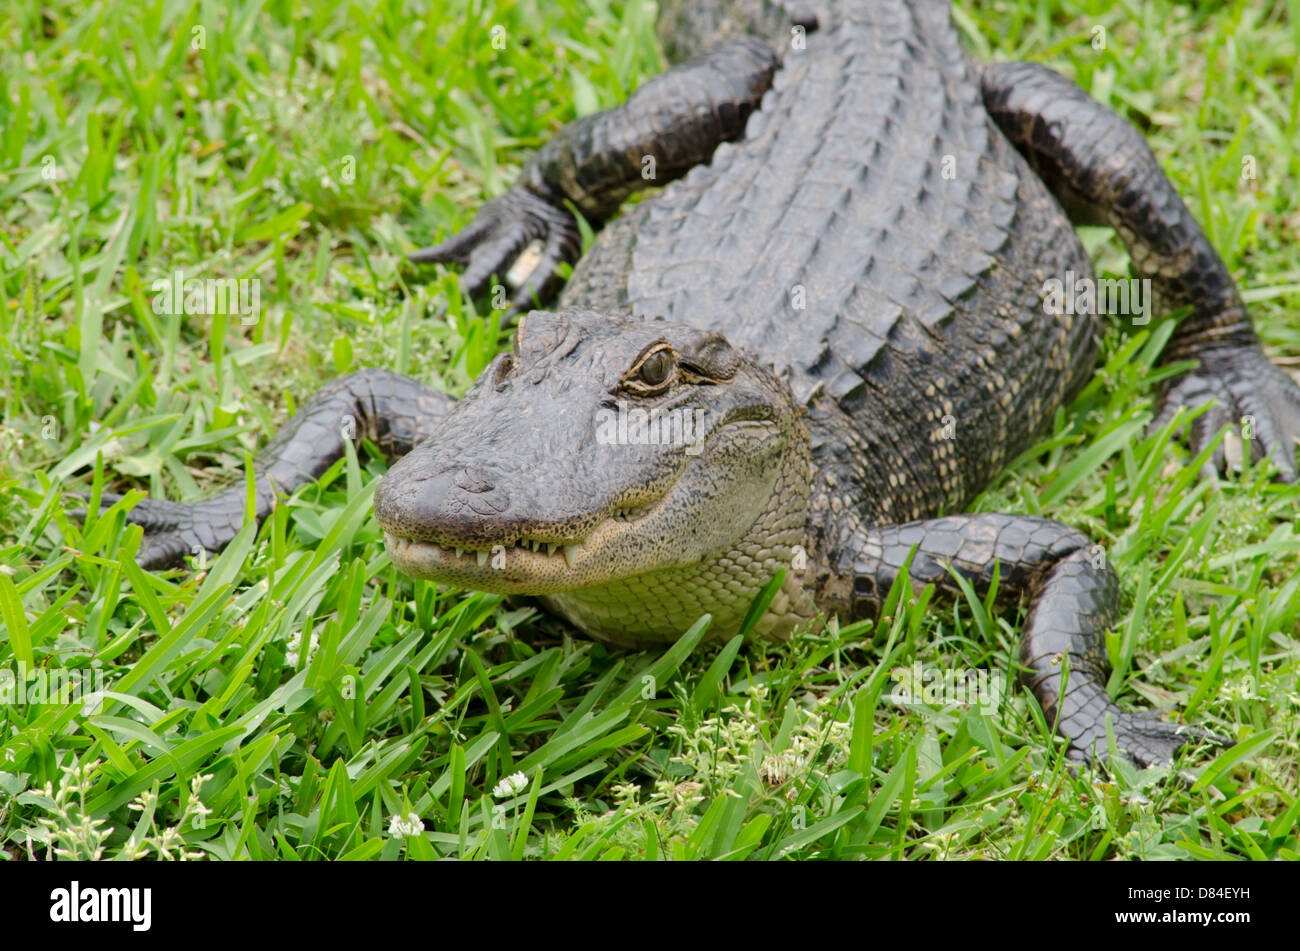 Louisiana, New Orleans, Lafitte. Jean Lafitte nationaler historischer Park - Barataria Preserve. Amerikanischer Alligator. Stockfoto